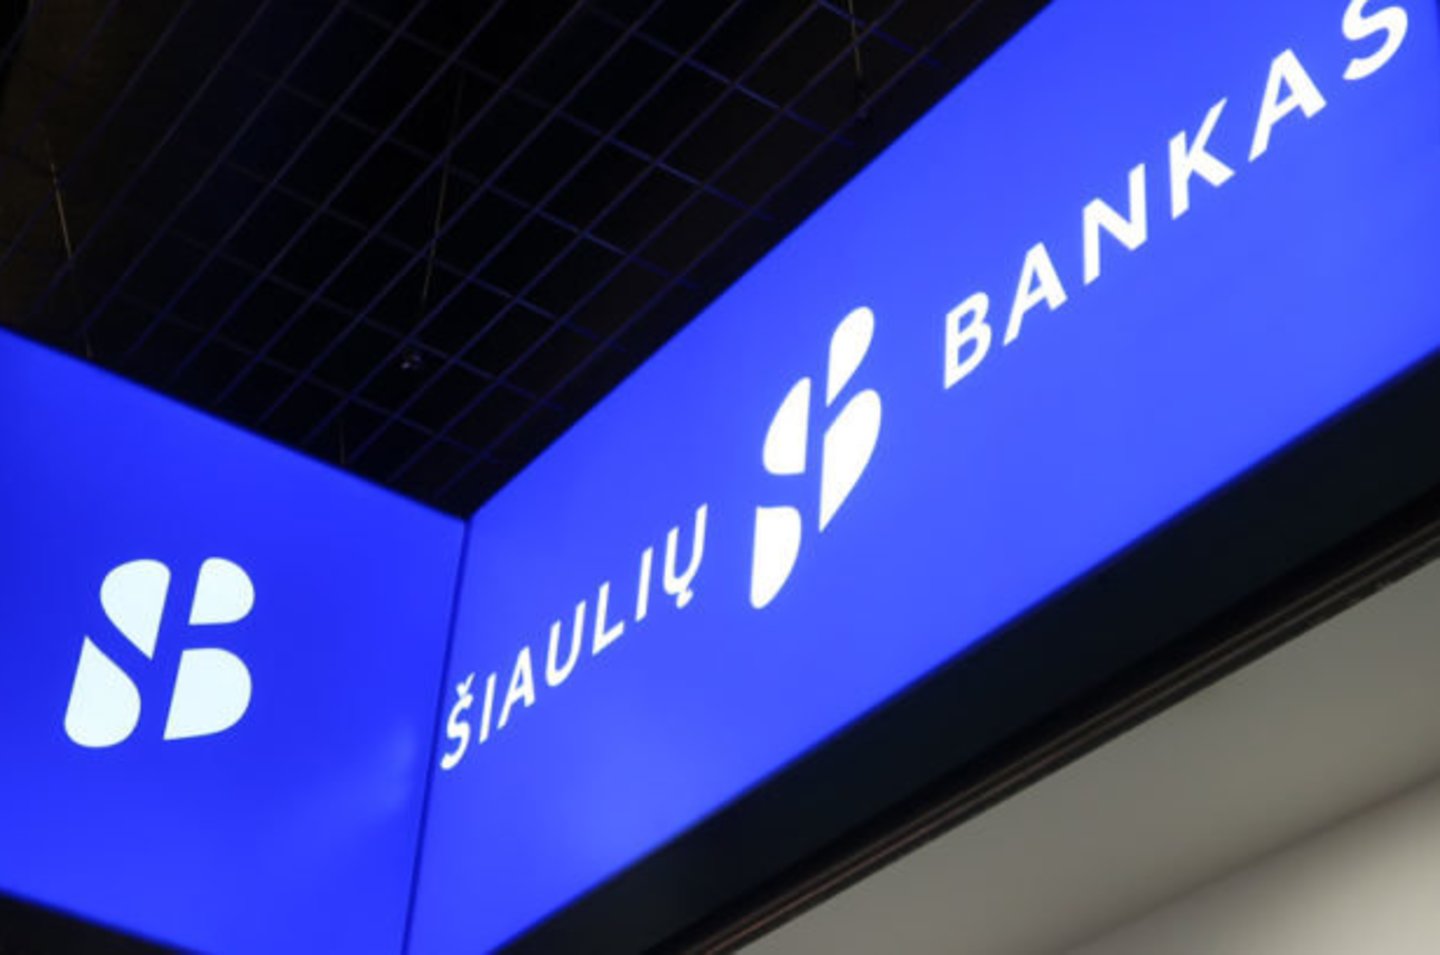  Aktyviausiai kreditus su garantija teikiantis bankas – Šiaulių bankas, kuriam suteiktų garantijų suma išaugo kone tris kartus (21 proc. visų kreditų su garantija).